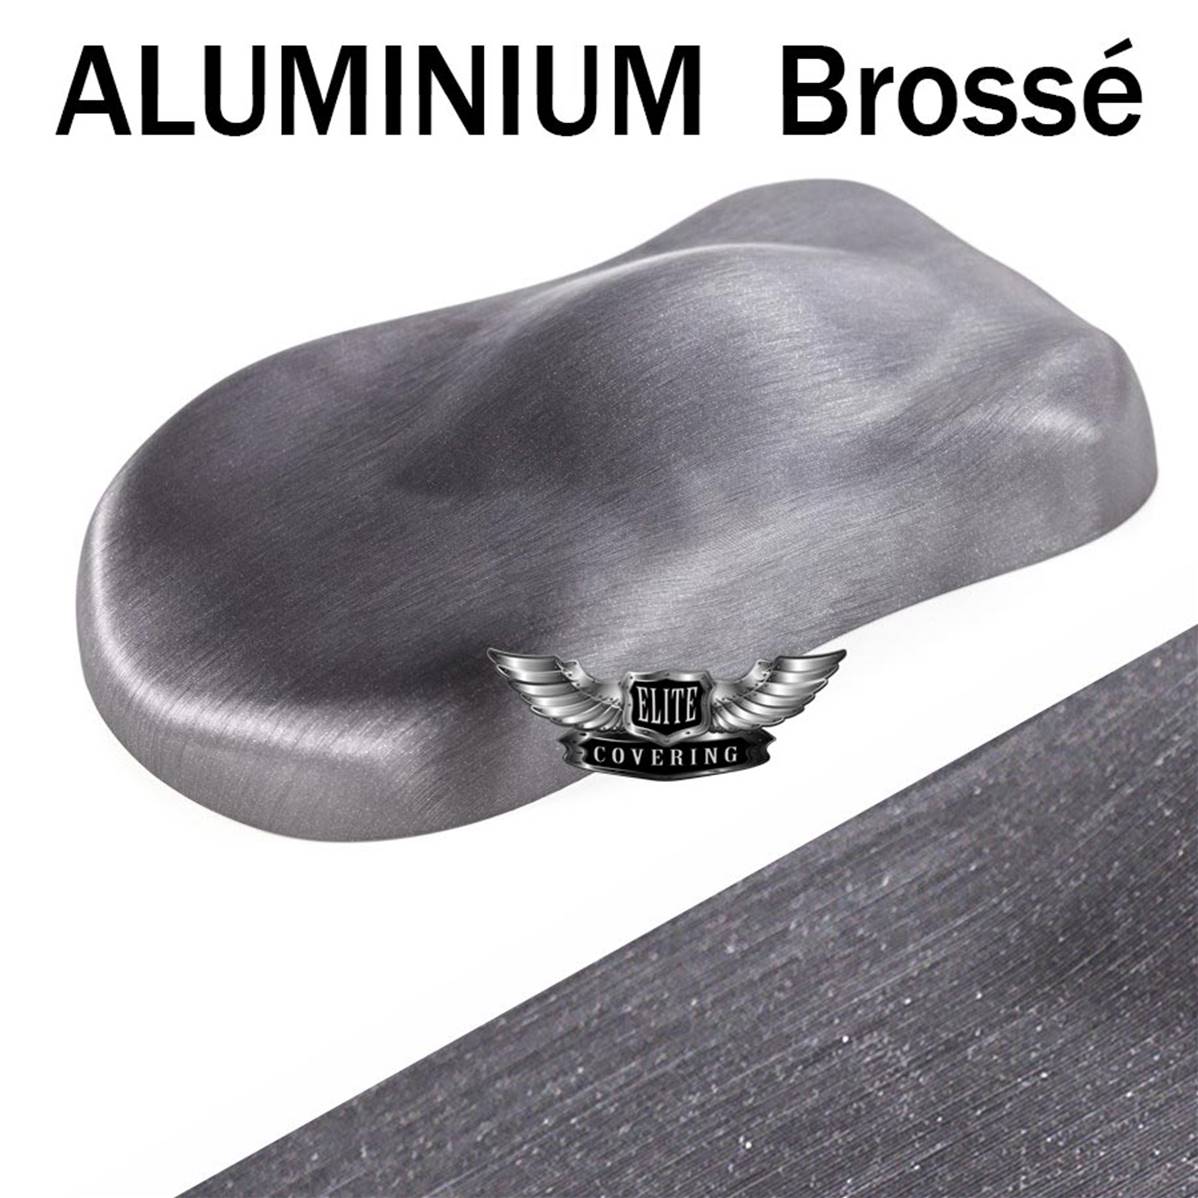 Feuille d'aluminium autocollante pour cuisine et meubles - Gris